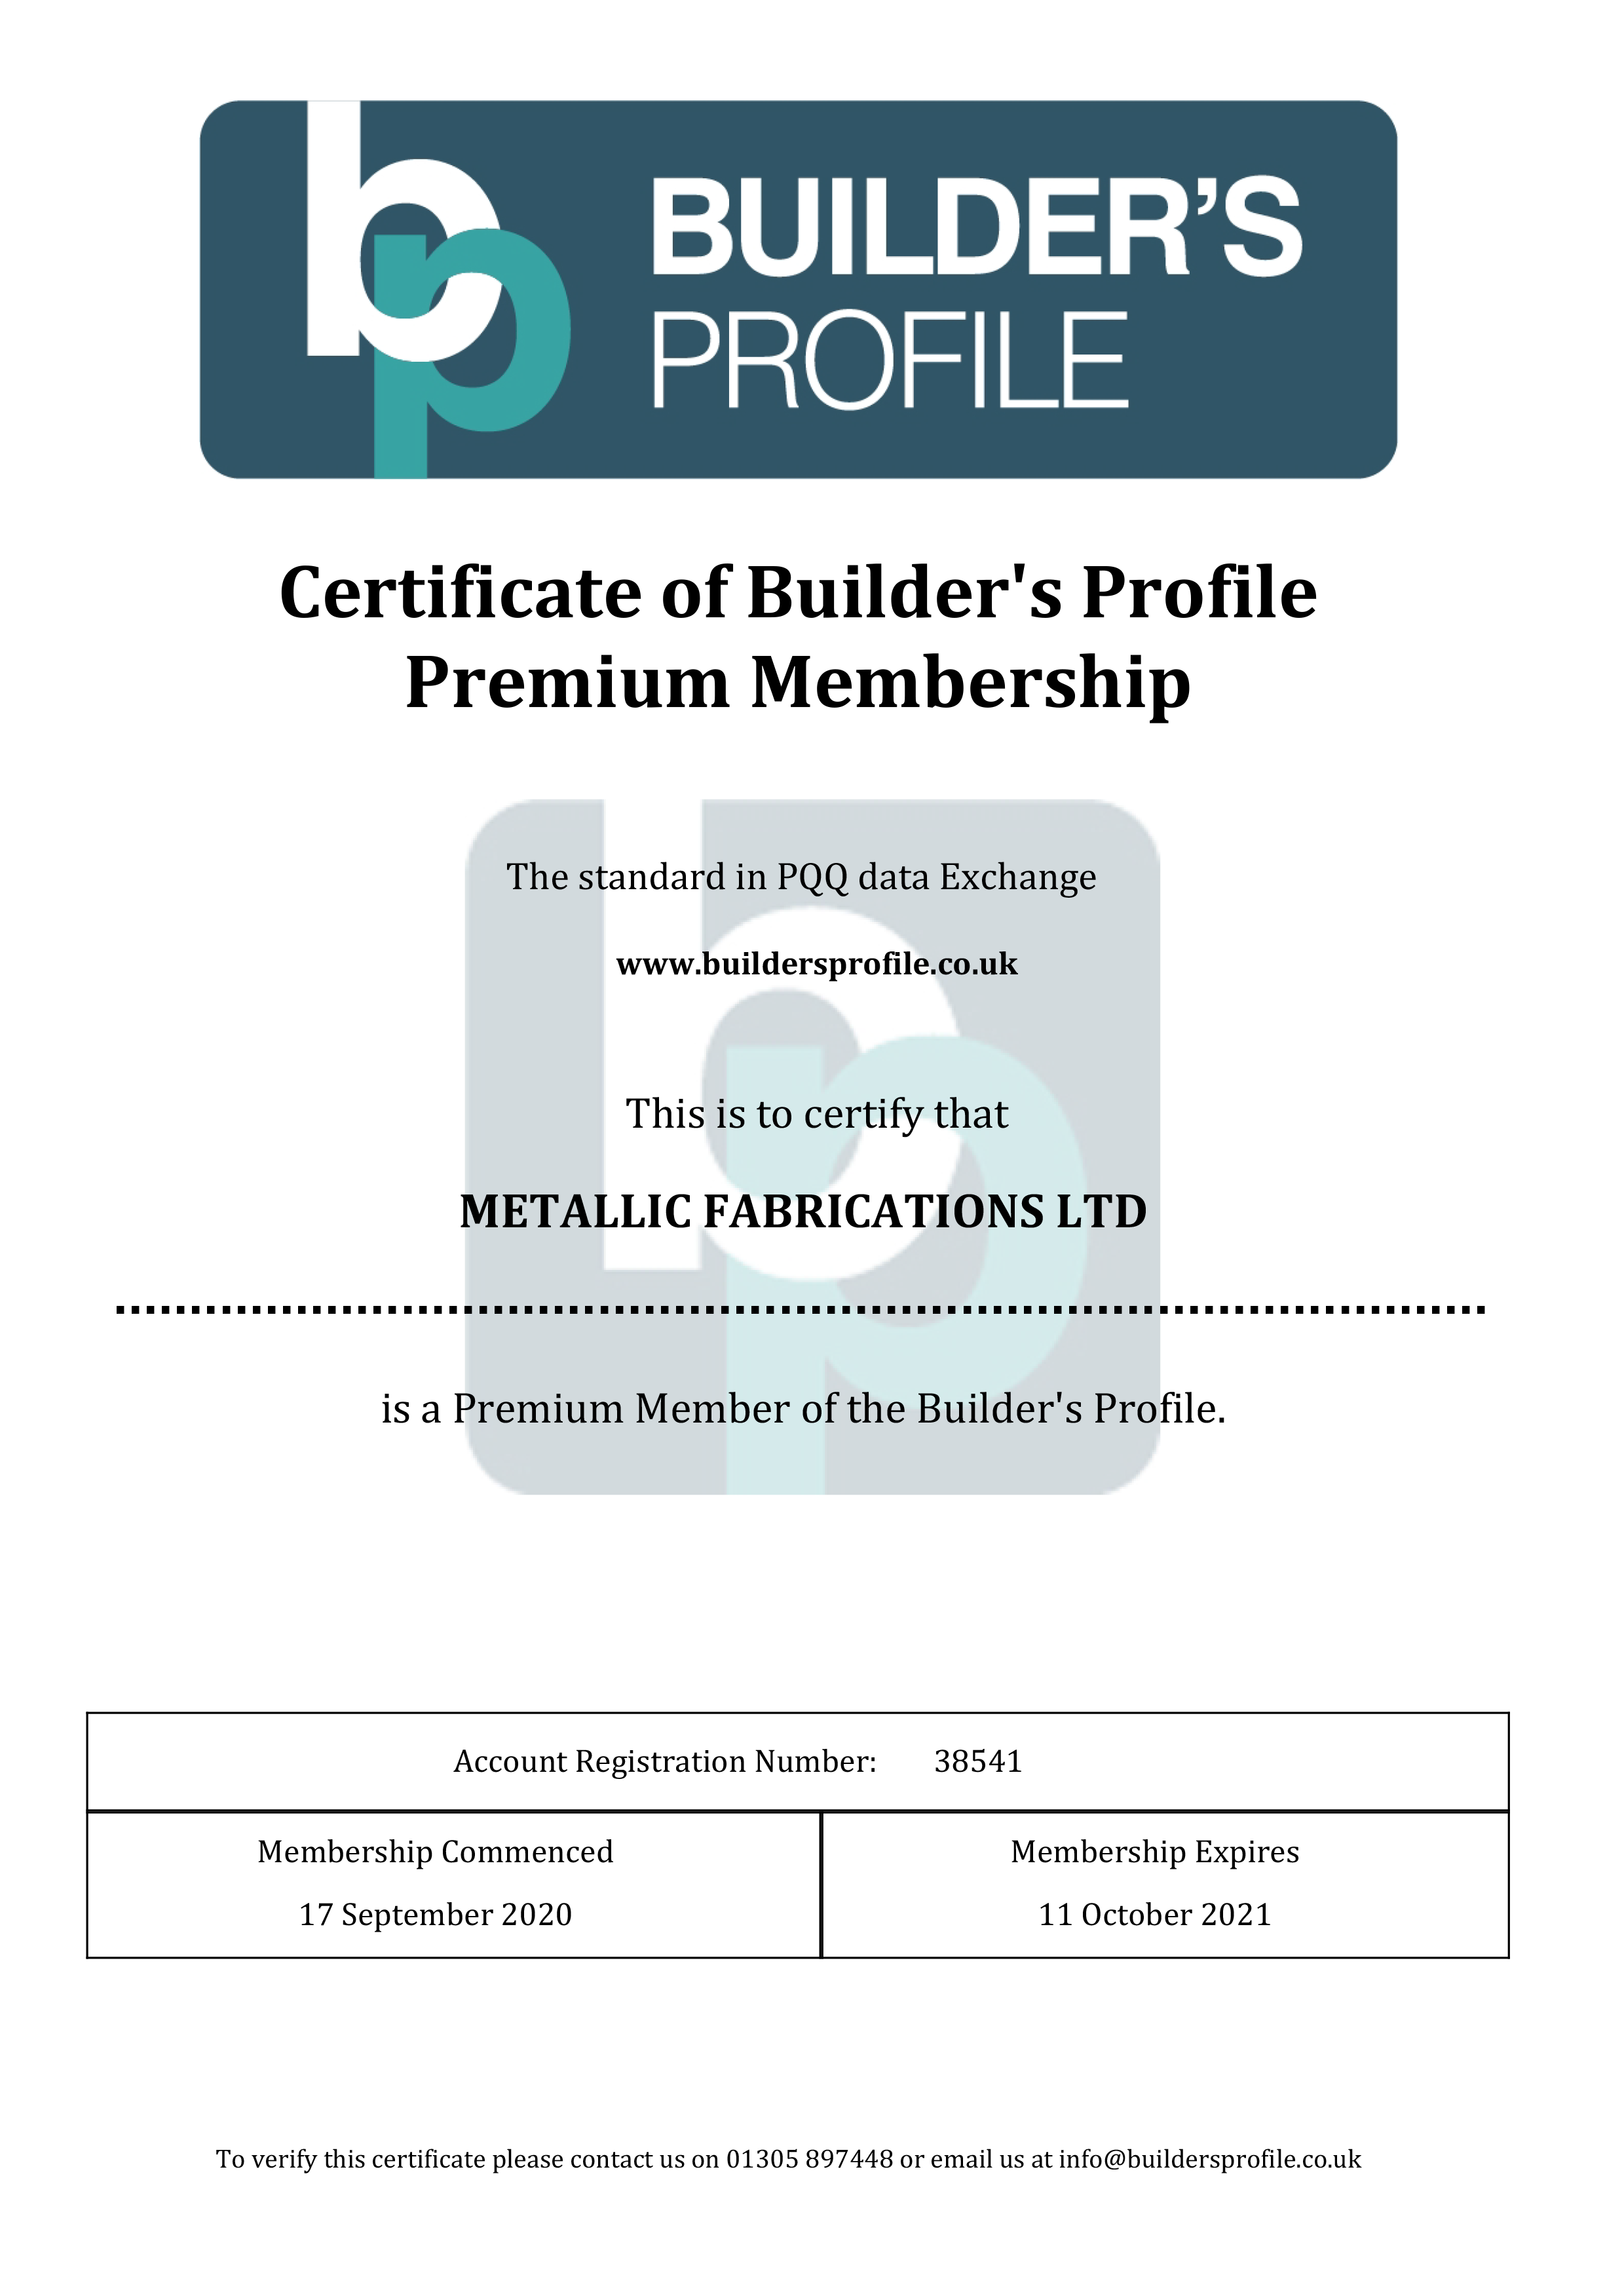 Builders Profile Premium Membership